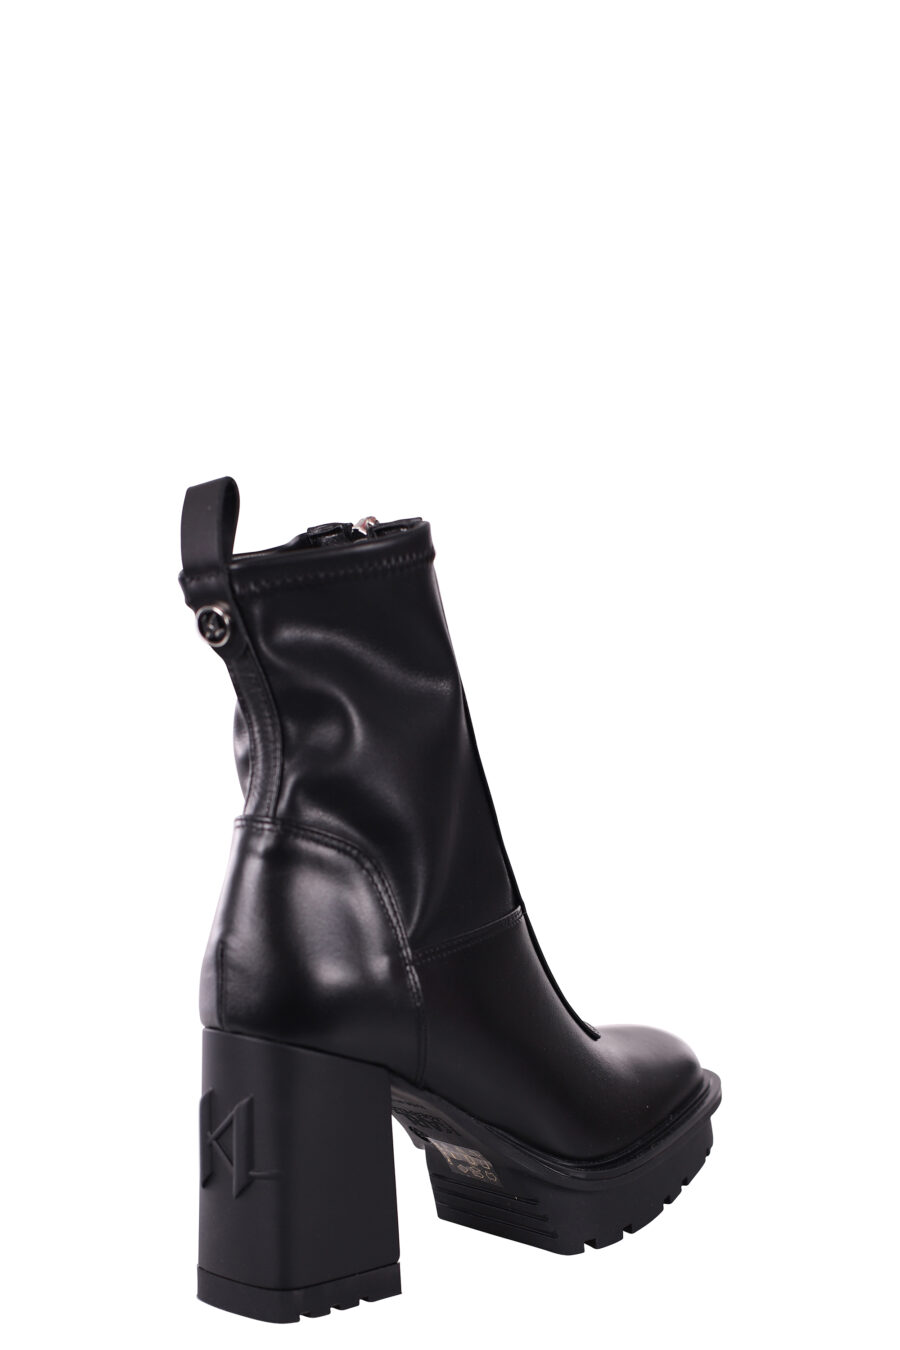 Botines negros estilo calcetin con tacon y plataforma - IMG 5811